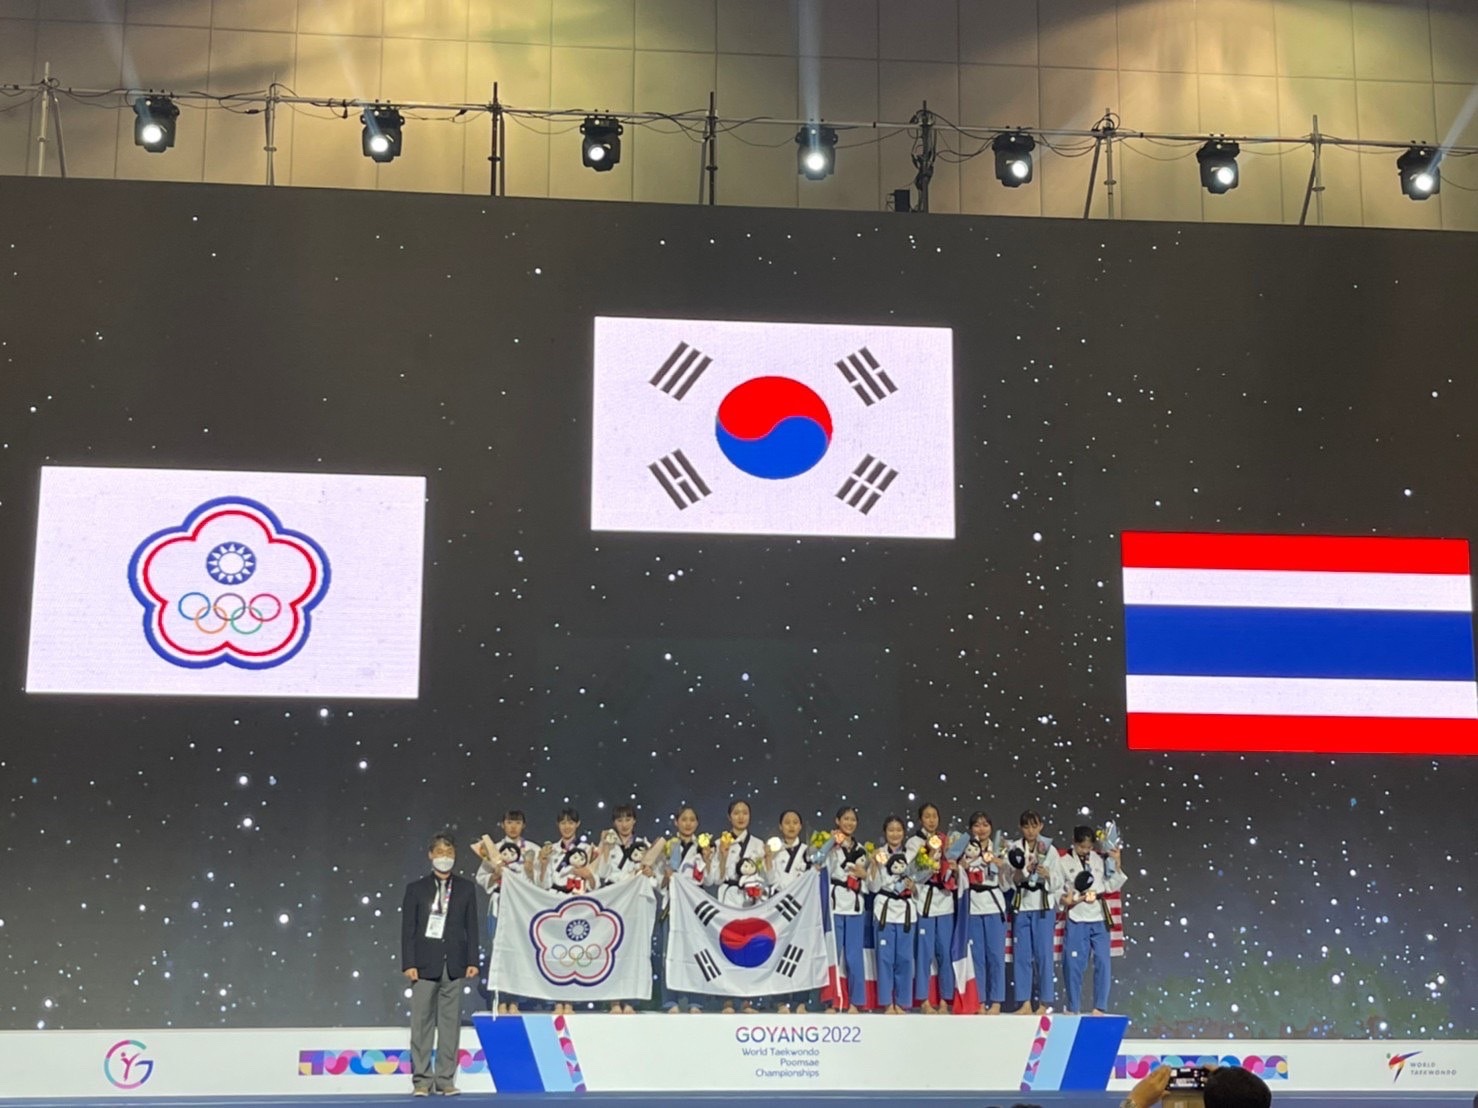 2022年韓國高陽世界跆拳道品勢錦標賽照片